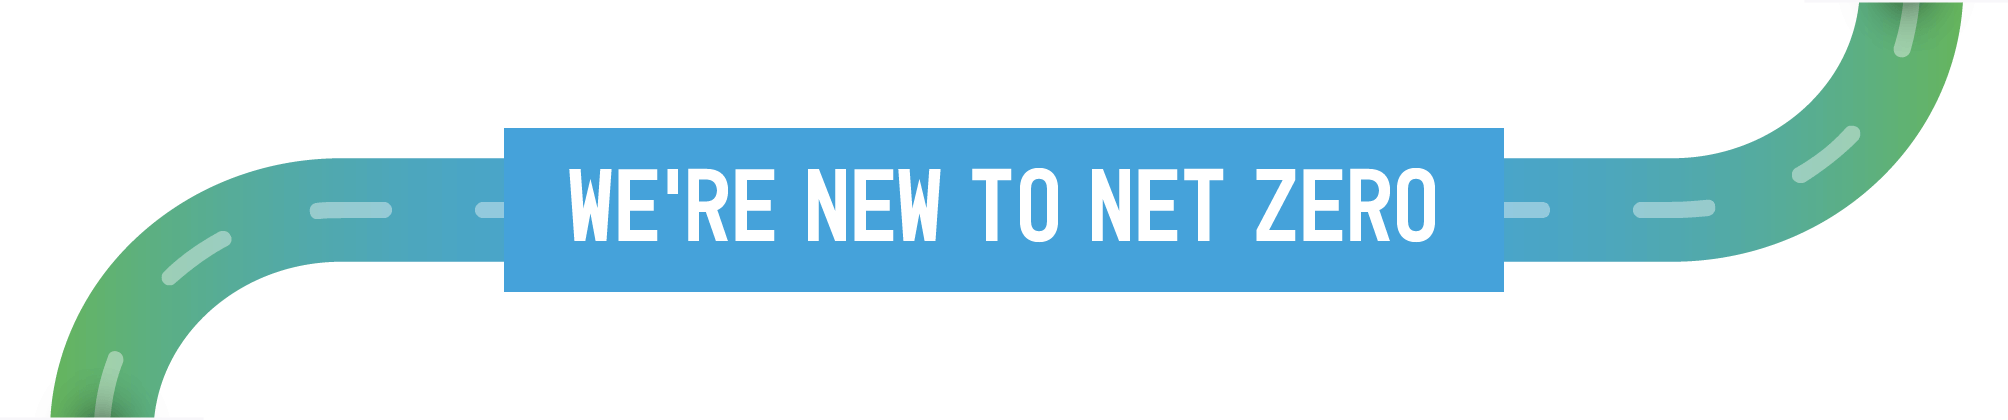 We’re new to Net Zero